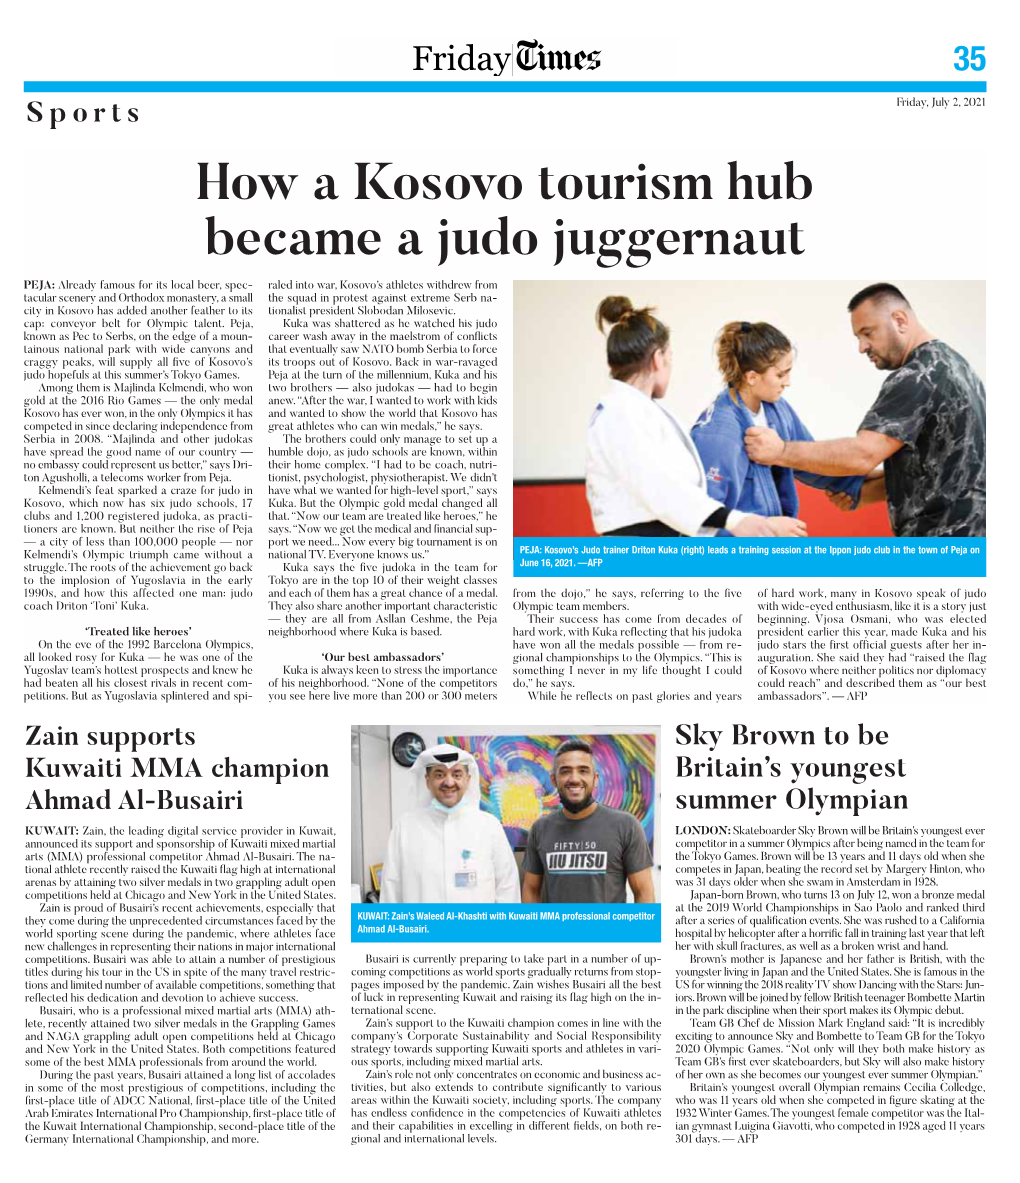 How a Kosovo Tourism Hub Became a Judo Juggernaut